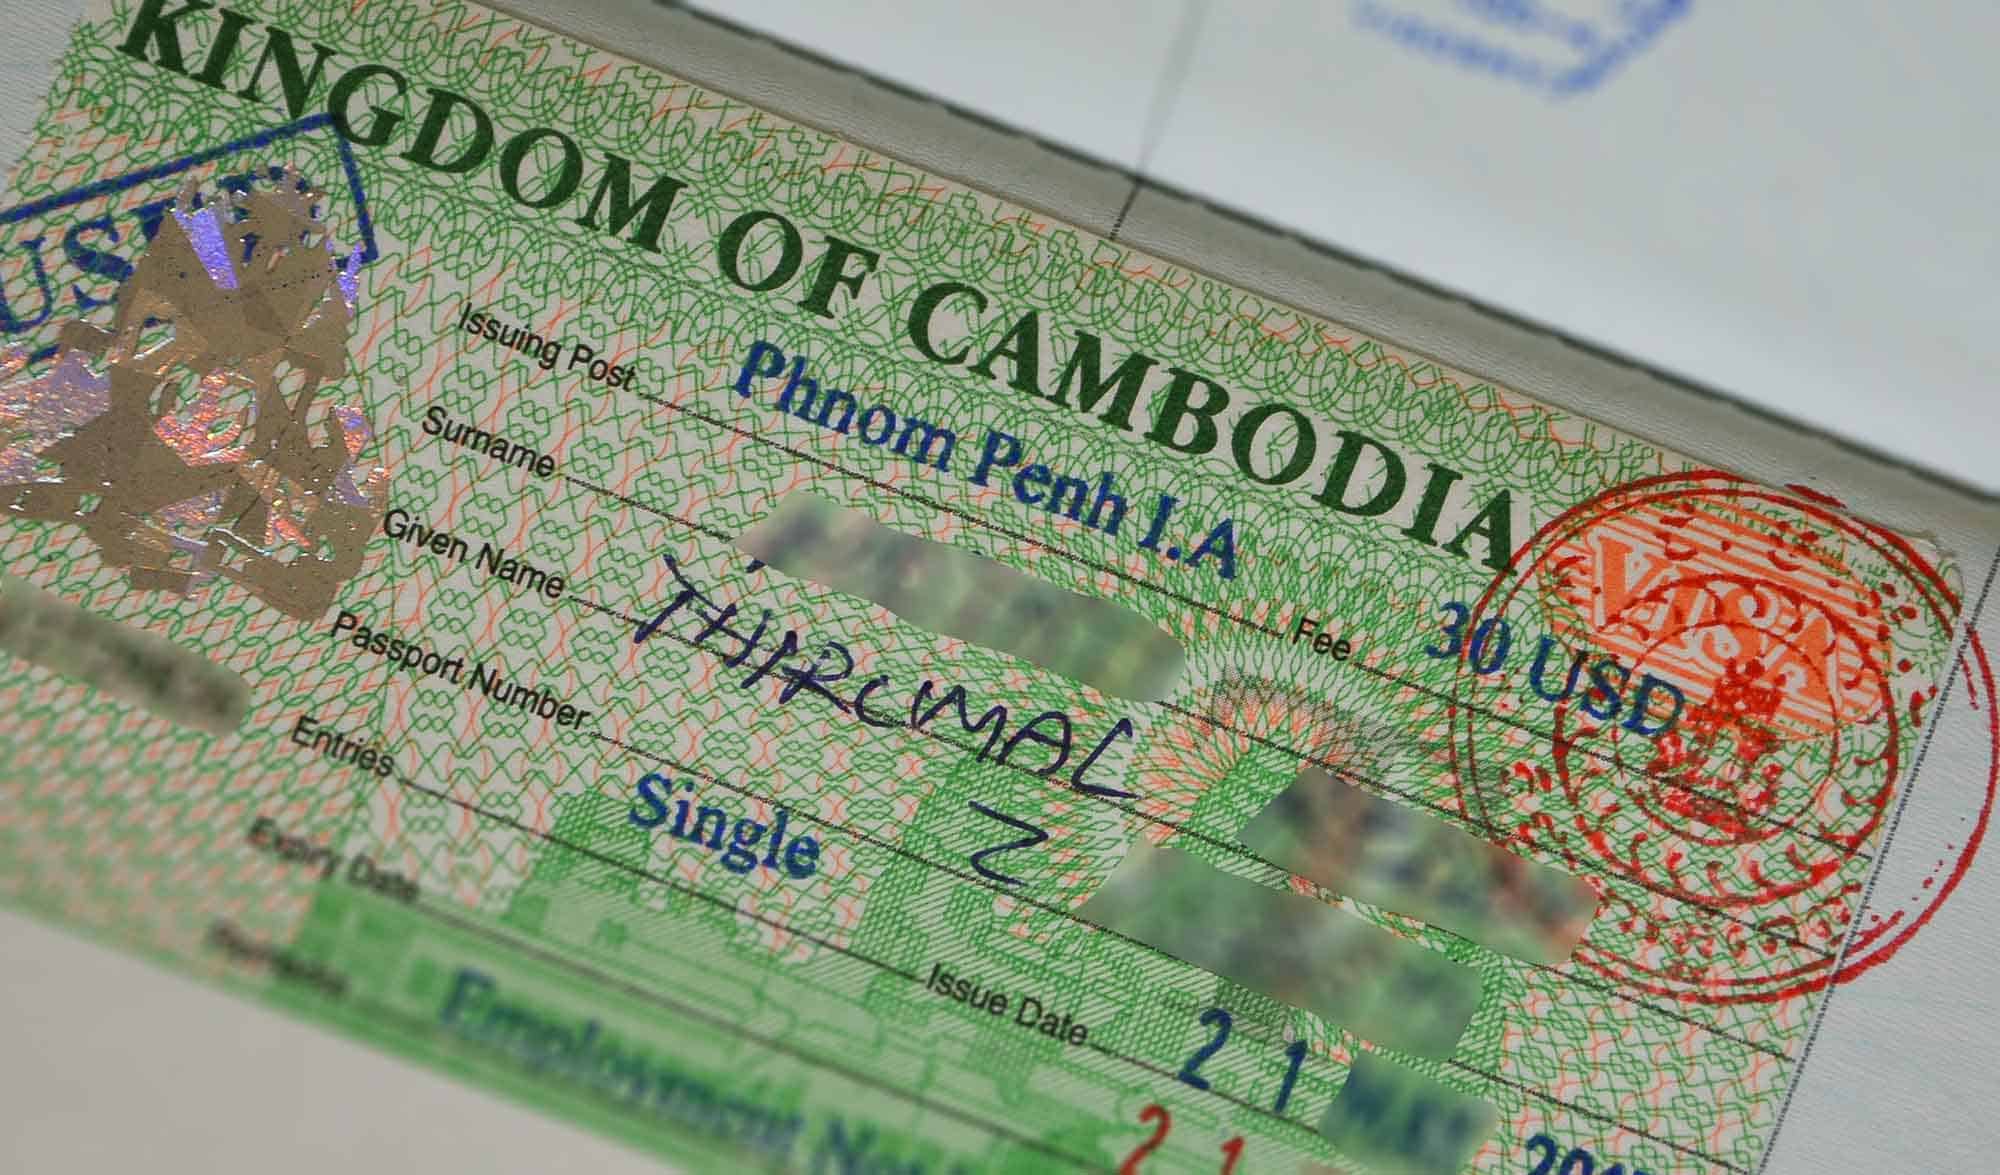 tourist visa extension cambodia